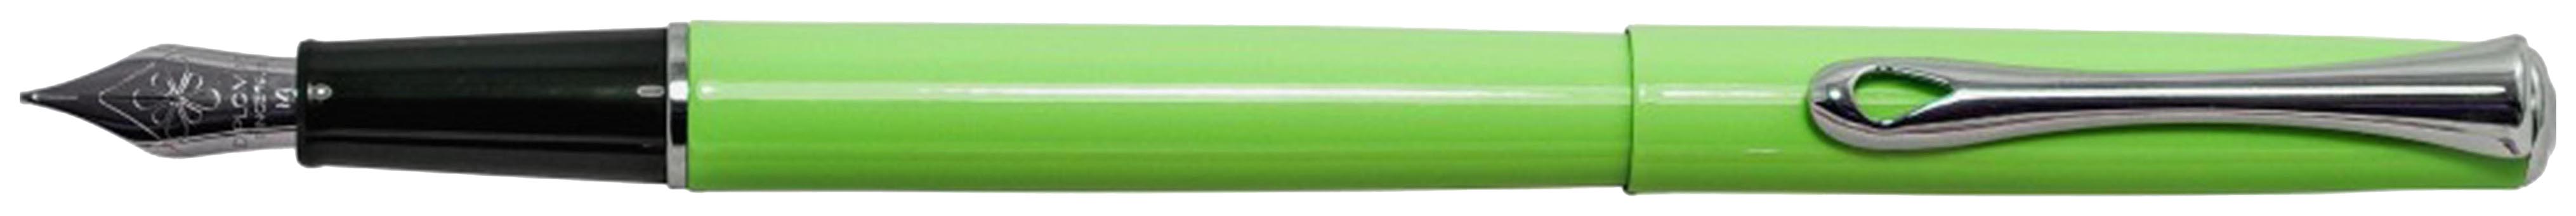 Перьевая ручка Diplomat Pen 1006780 Traveller Lumi green M синяя